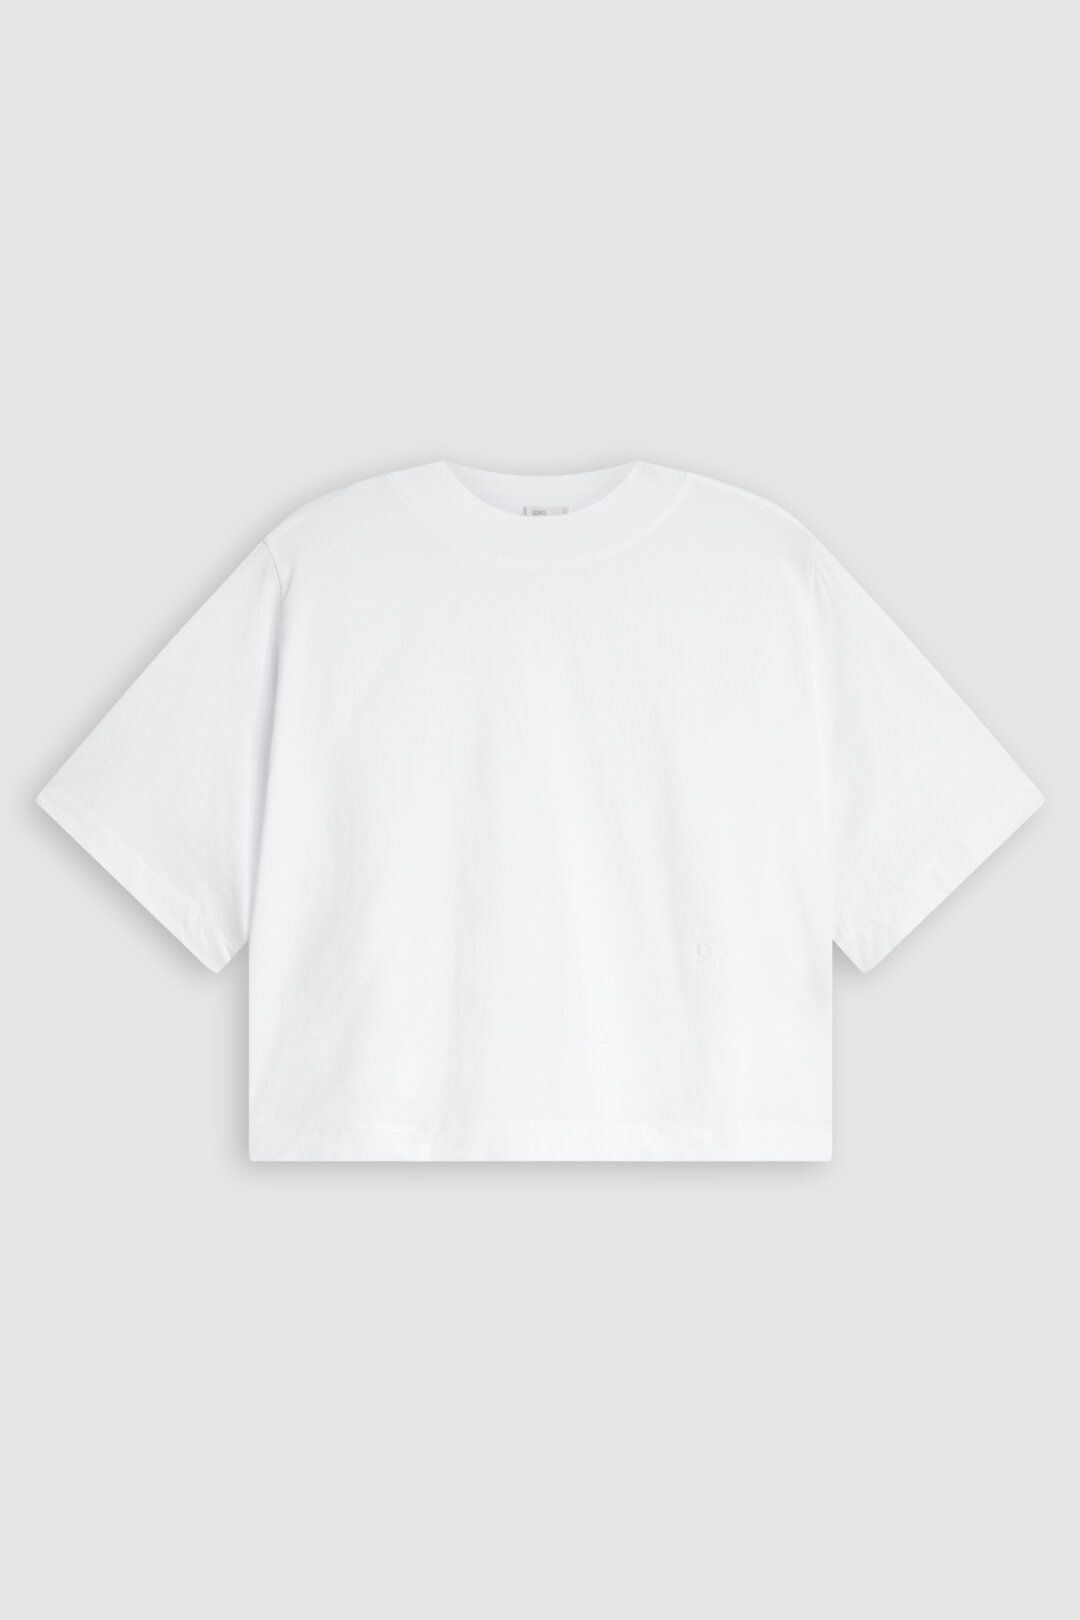 Cropped tshirt white-3